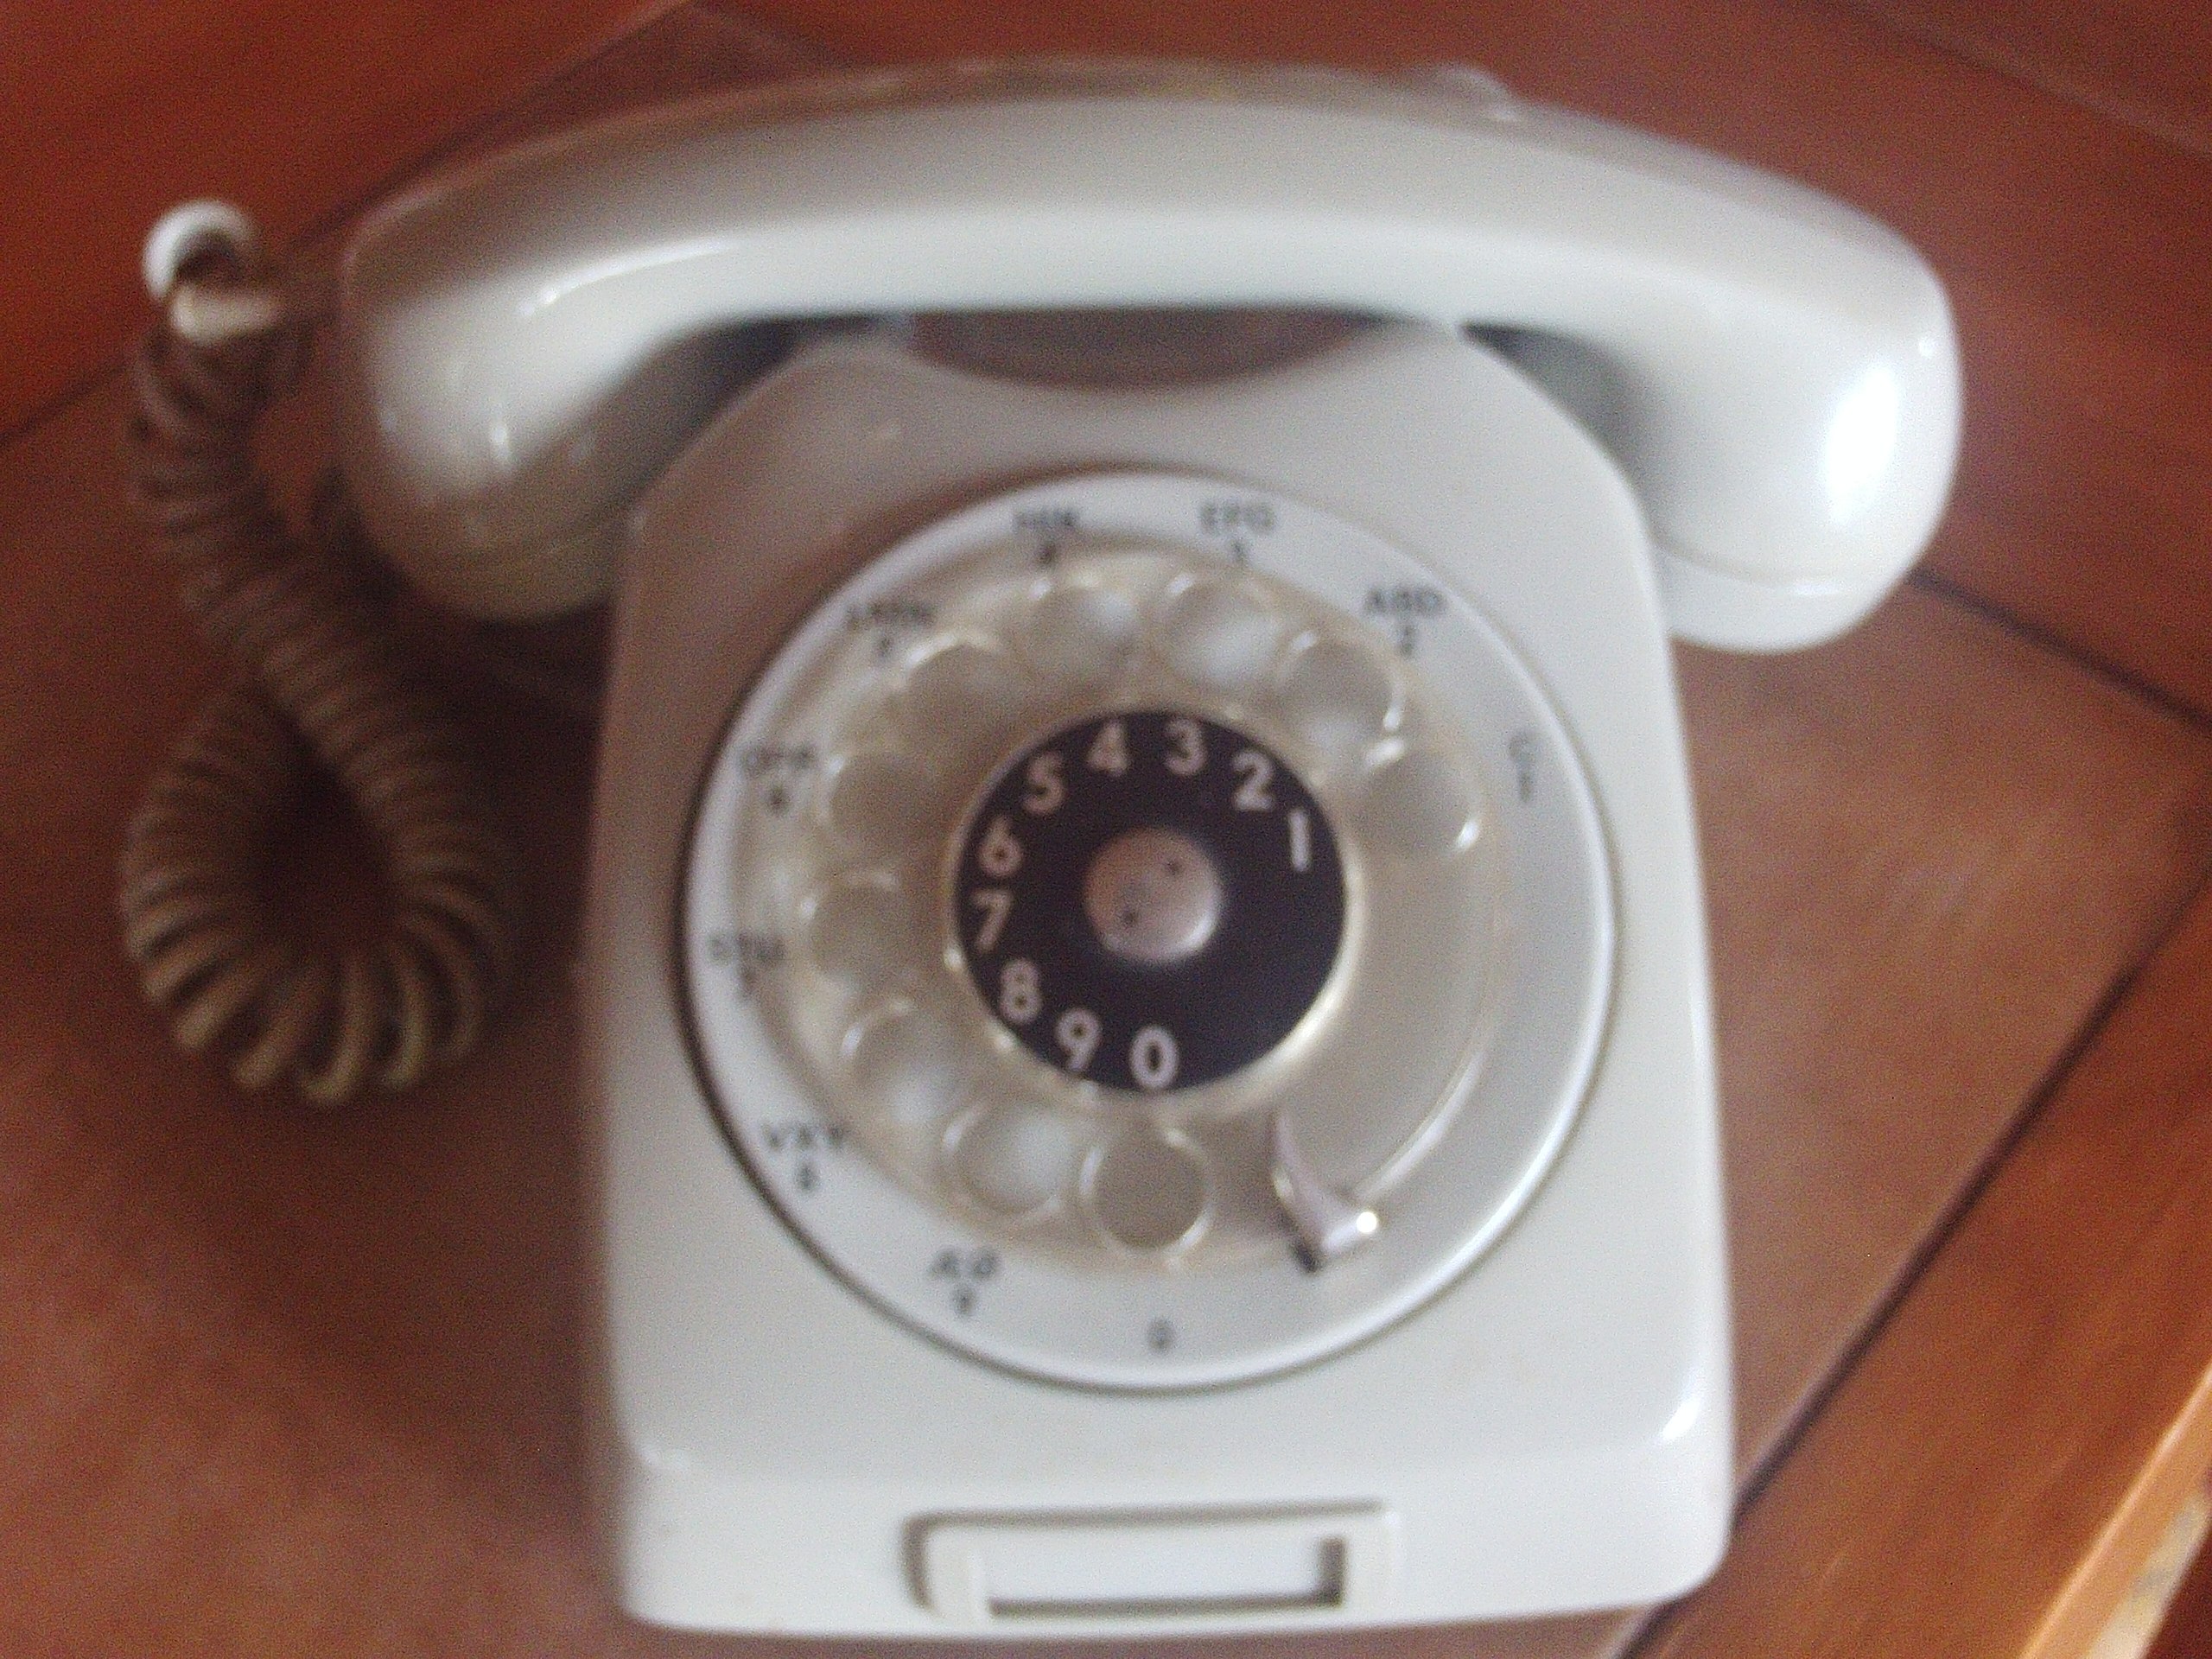 Teléfono Antiguo.